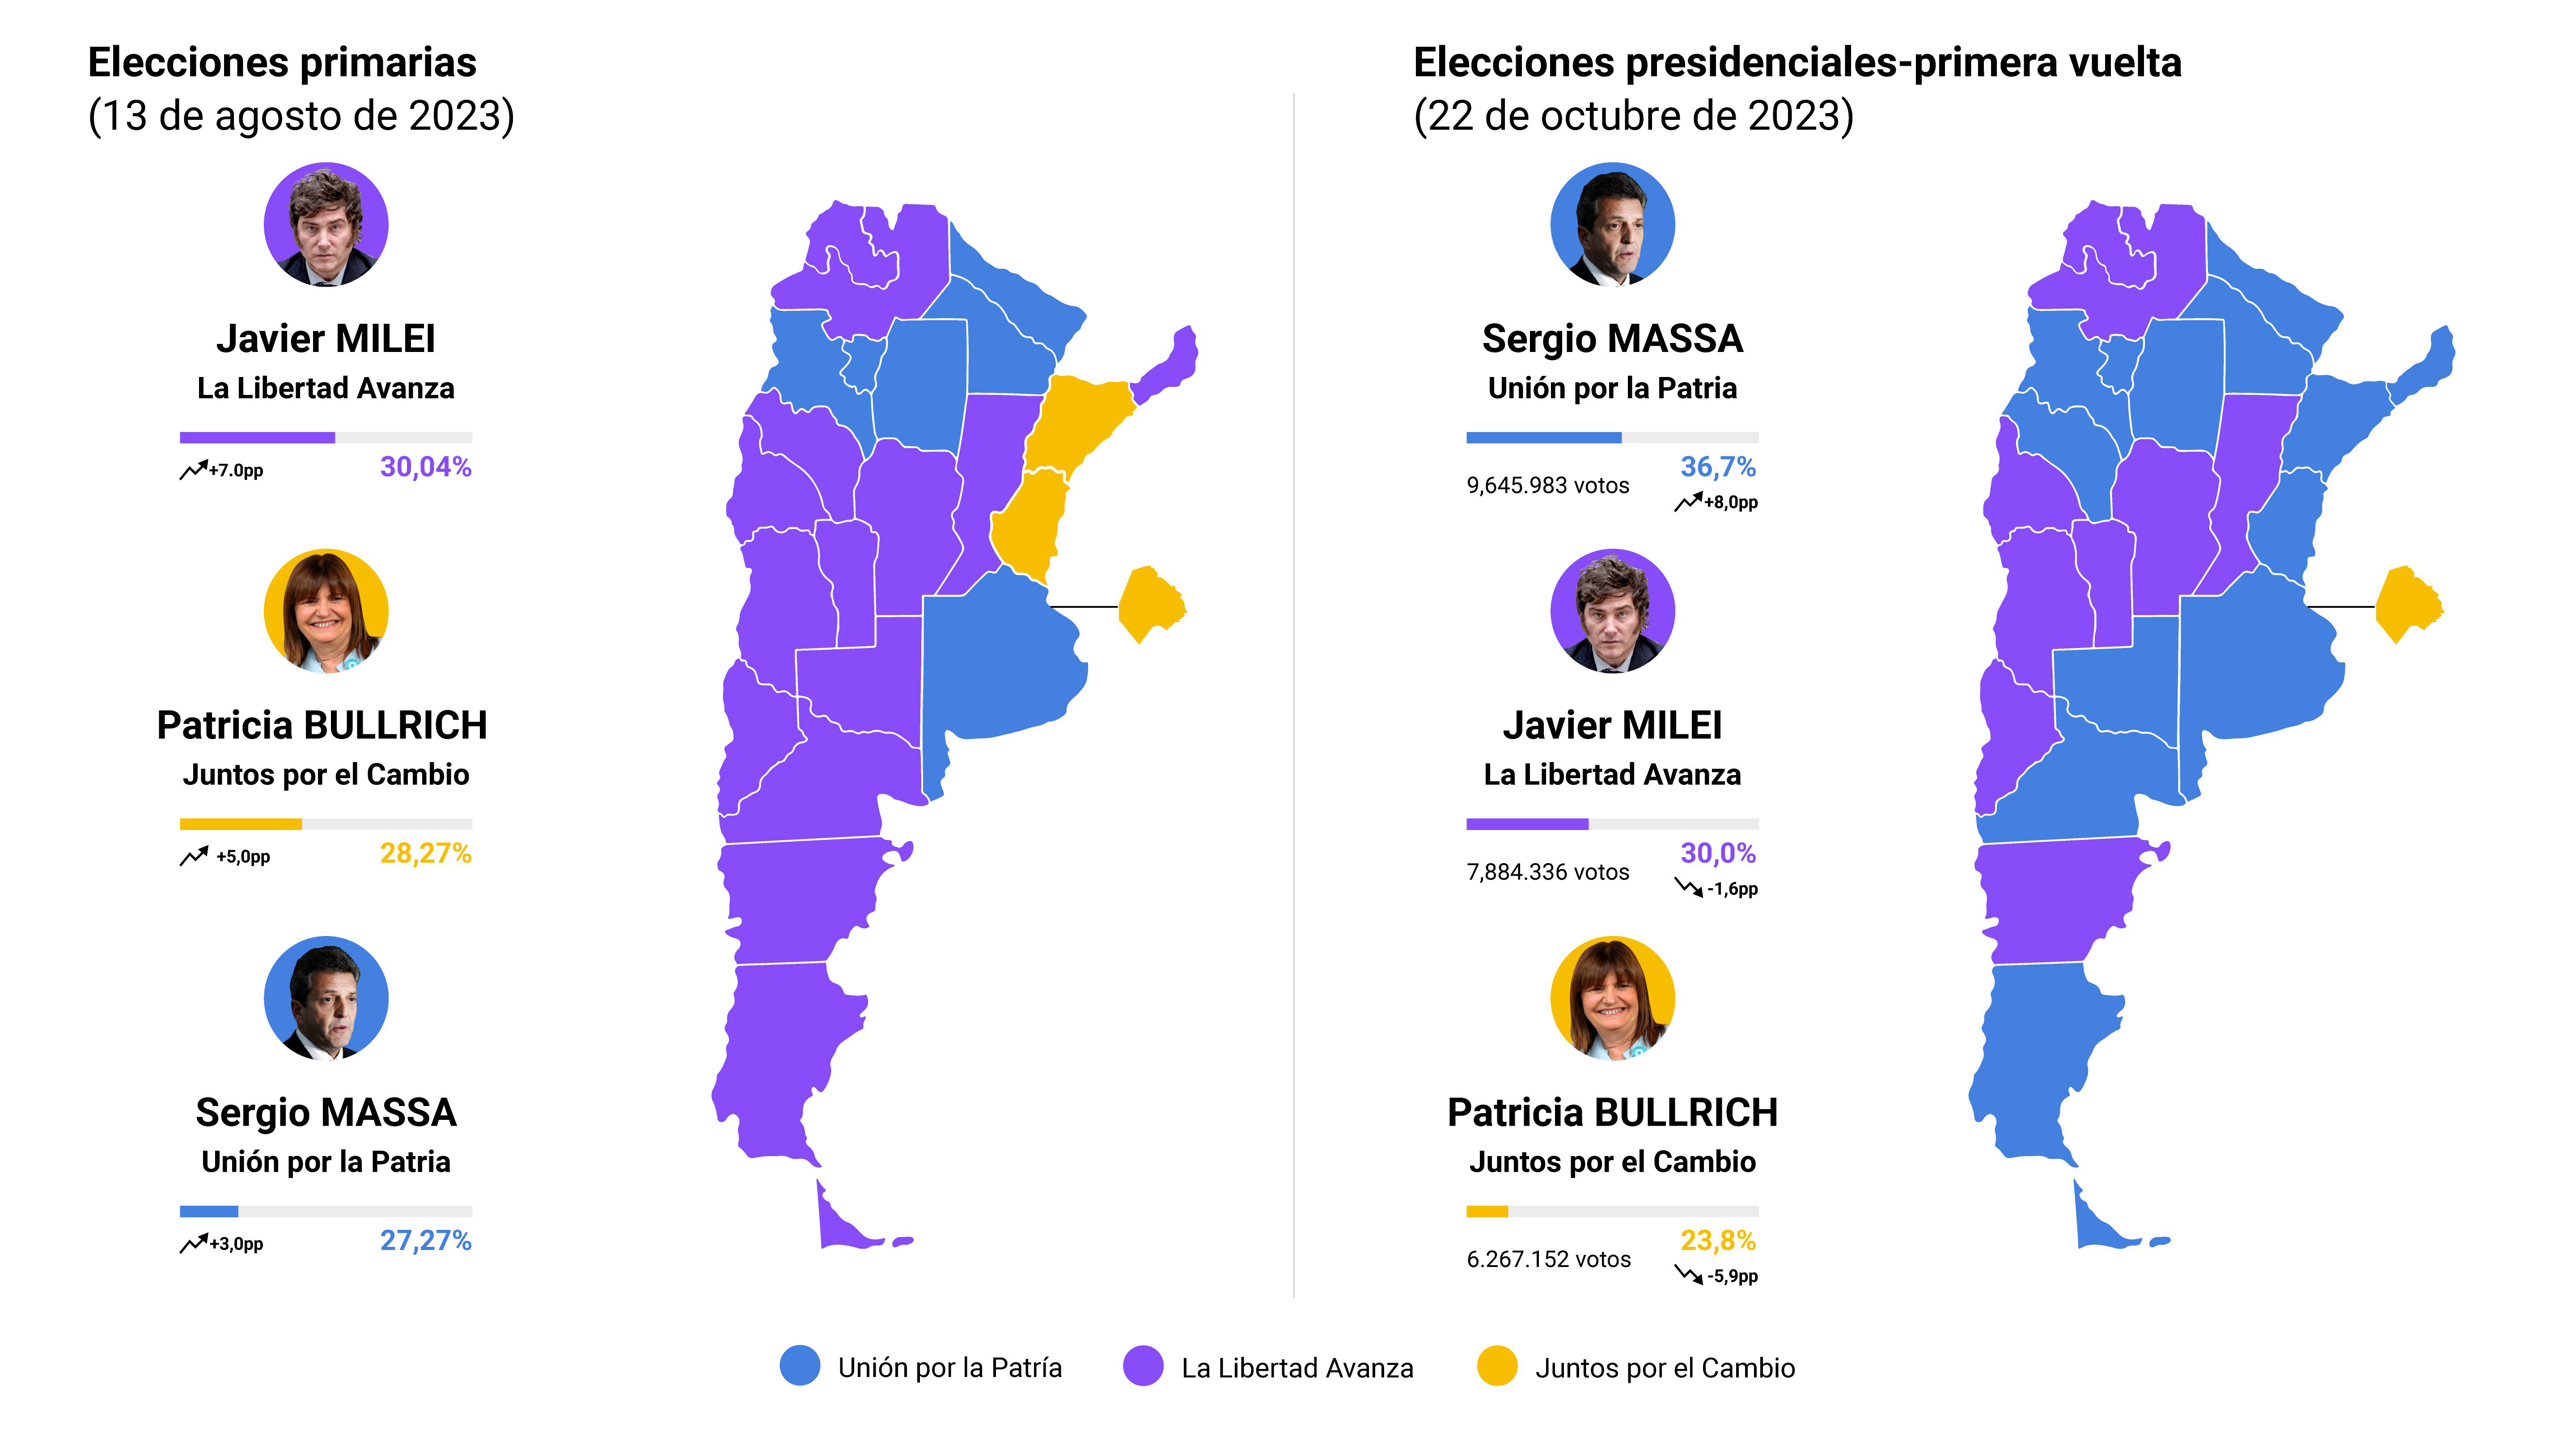 Guadalupe Arnold Berita Resultados Elecciones Argentina 2023 Presidente